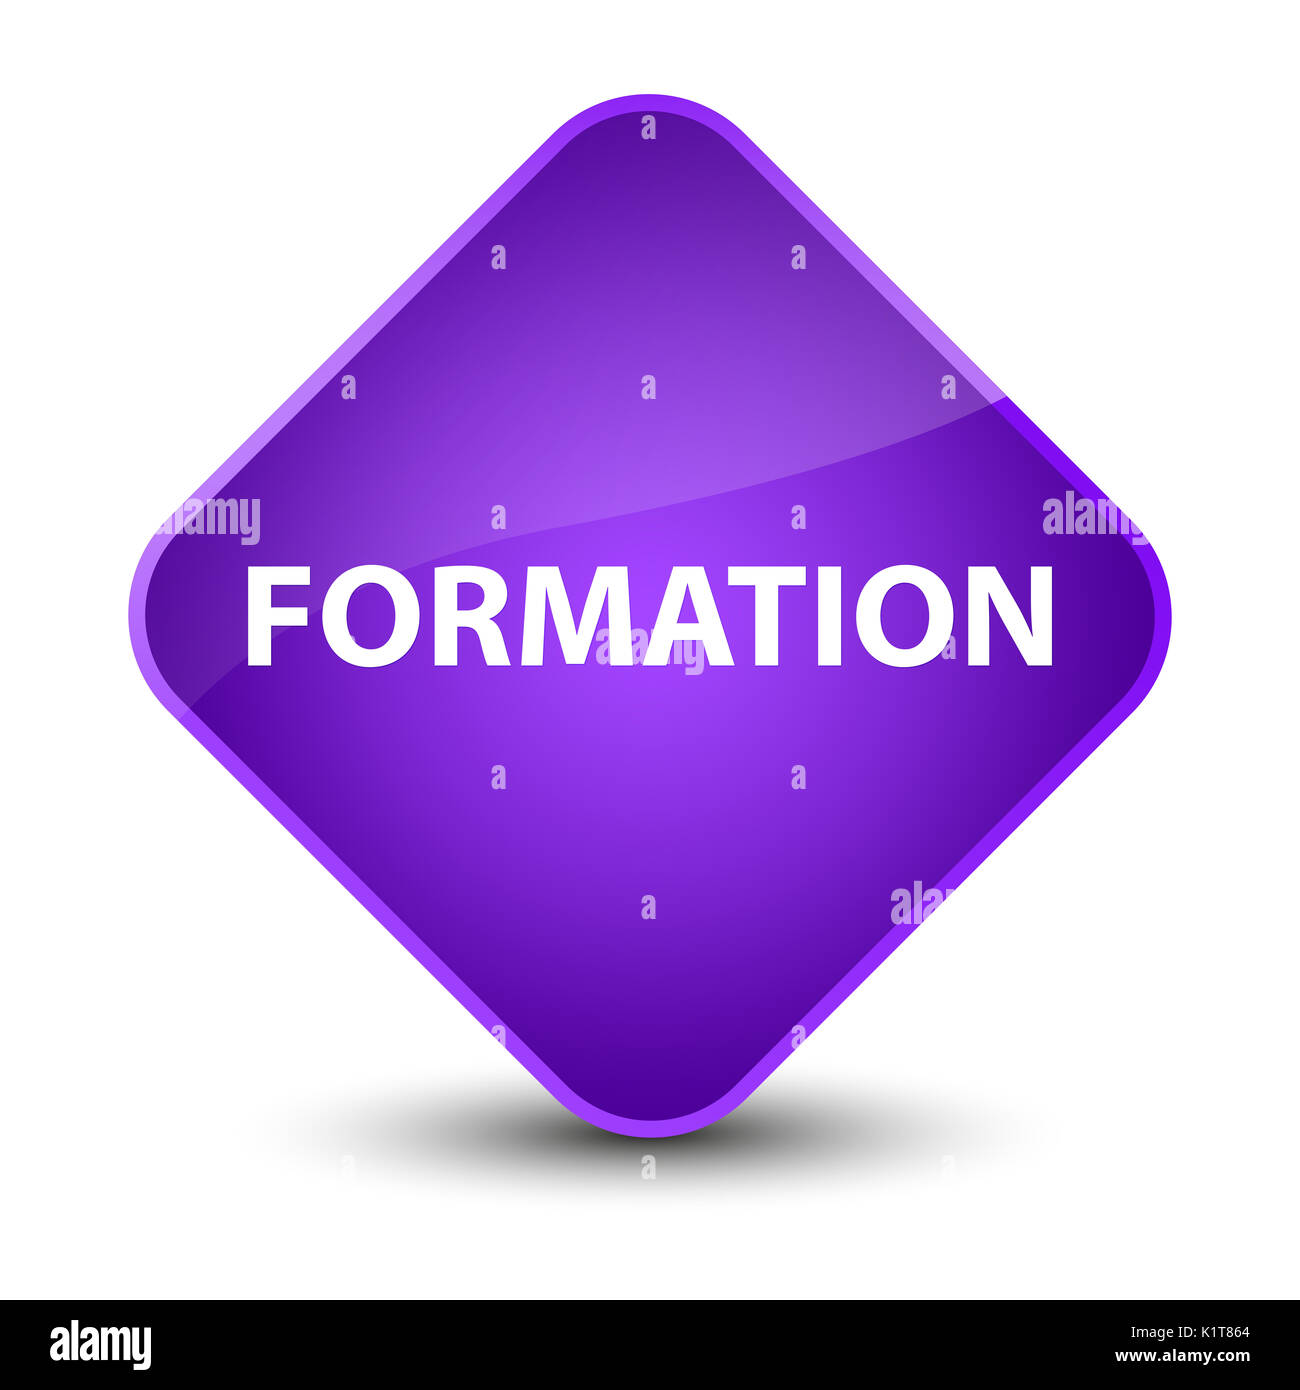 Formation isolé sur violet élégant bouton diamant abstract illustration Banque D'Images